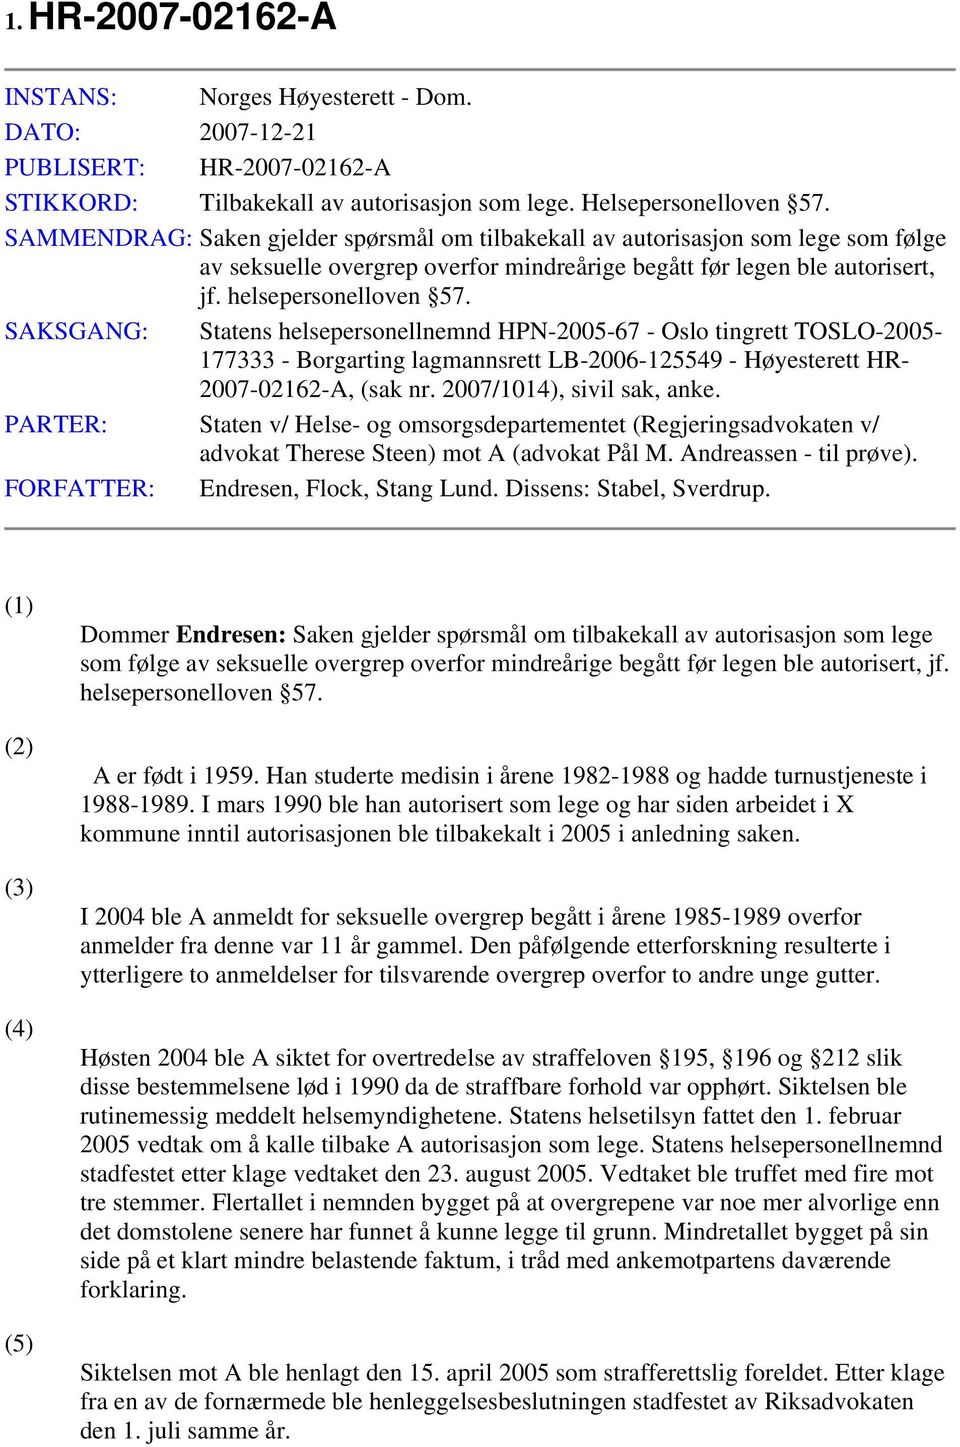 SAKSGANG: Statens helsepersonellnemnd HPN-2005-67 - Oslo tingrett TOSLO-2005-177333 - Borgarting lagmannsrett LB-2006-125549 - Høyesterett HR- 2007-02162-A, (sak nr. 2007/1014), sivil sak, anke.